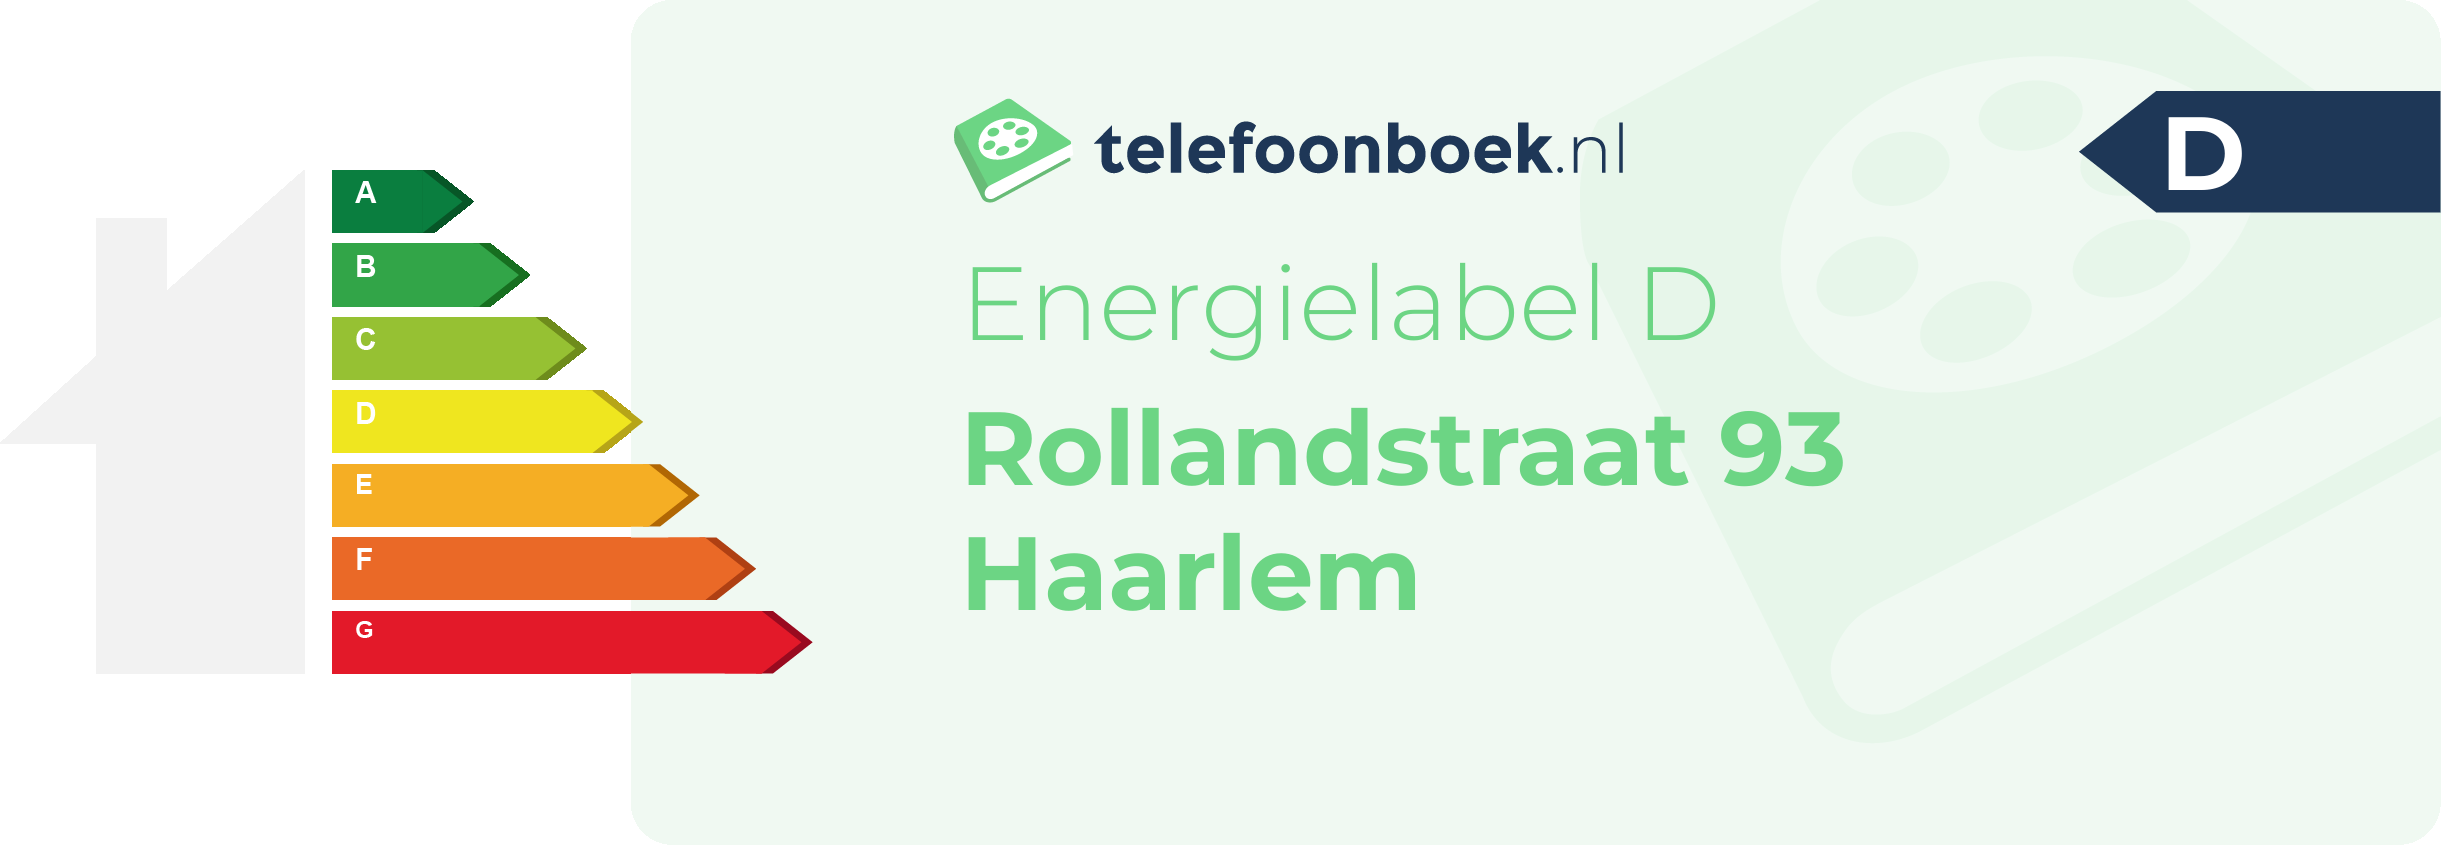 Energielabel Rollandstraat 93 Haarlem